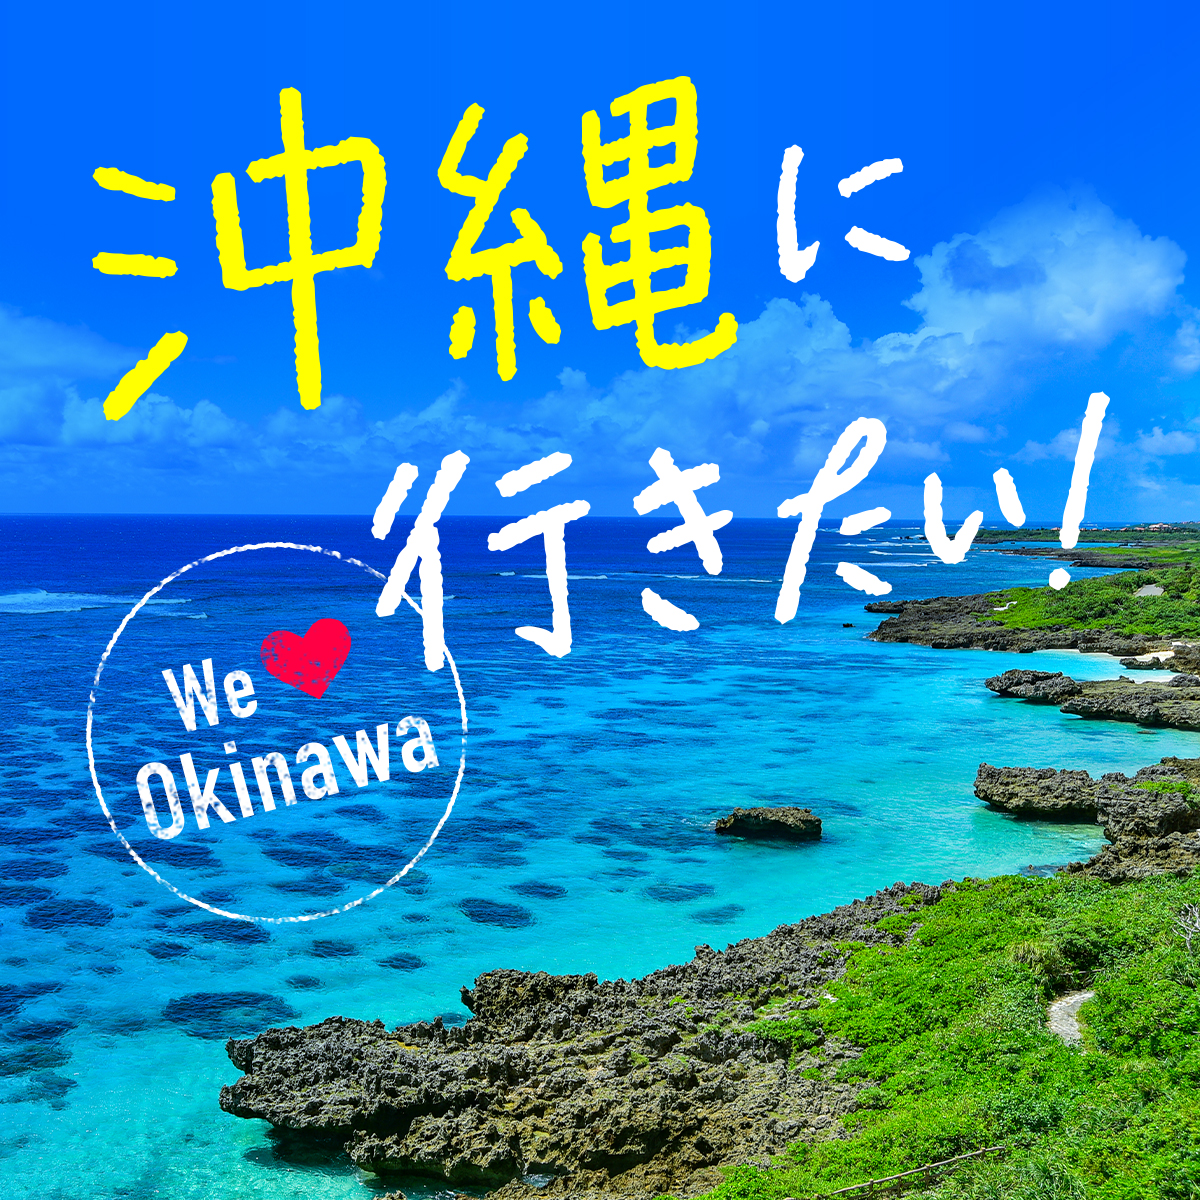 沖縄リゾートバイト特集